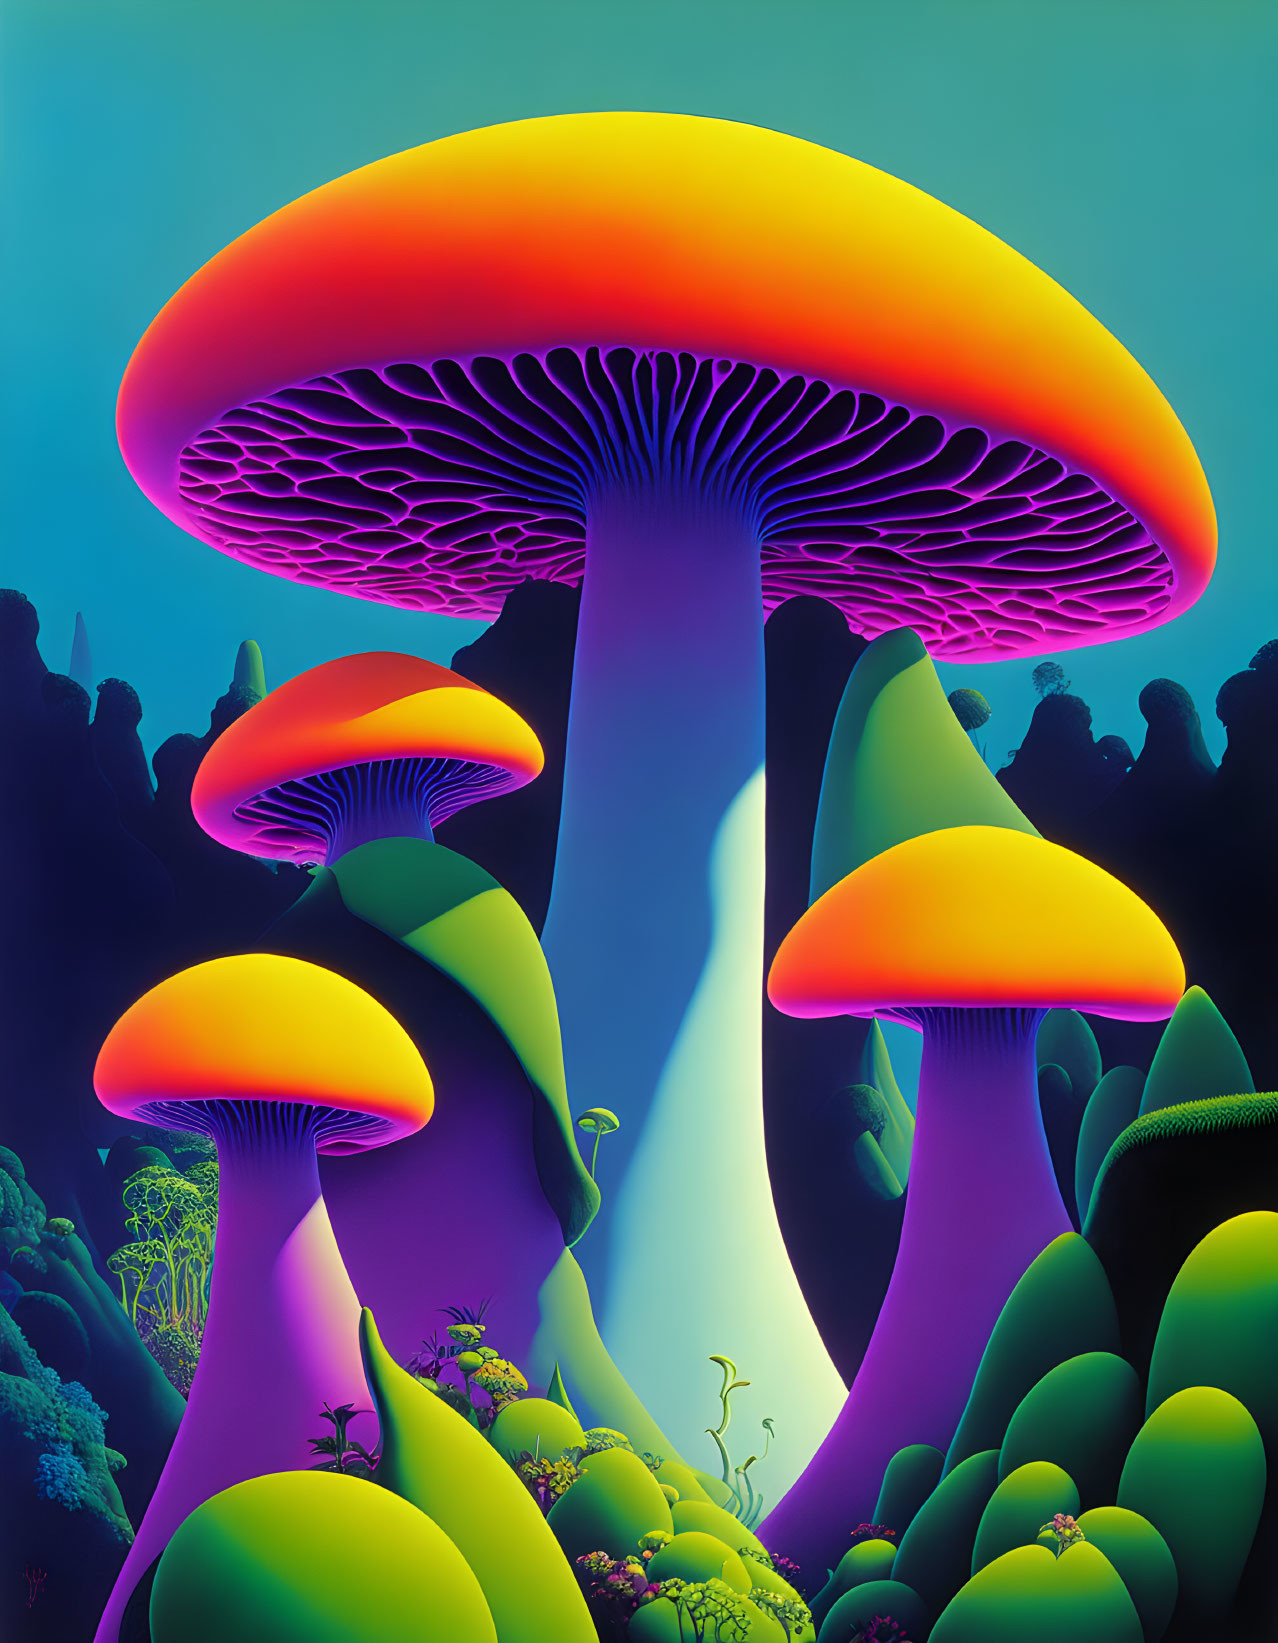 King mushroom 